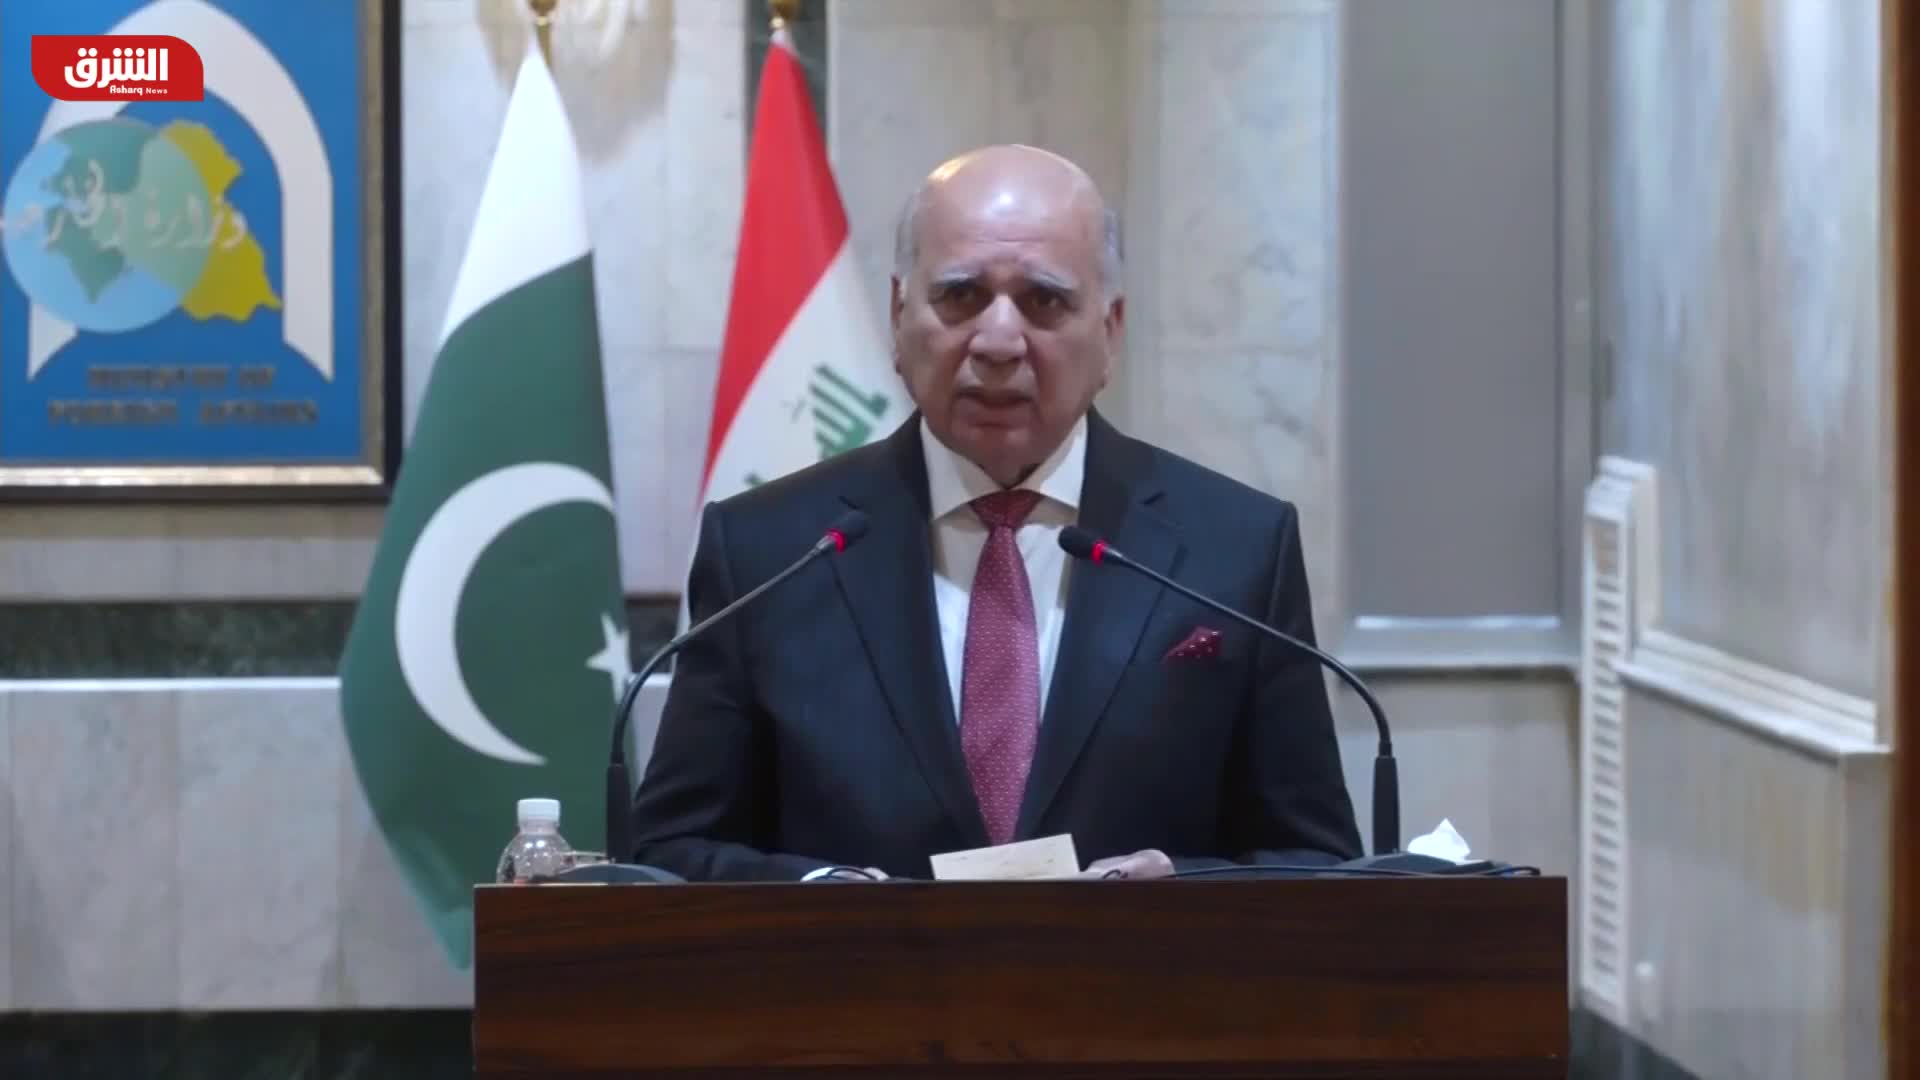 وزير الخارجية العراقي: توطيد التعاون مع باكستان لمحاربة الإرهاب والفكر المتطرف